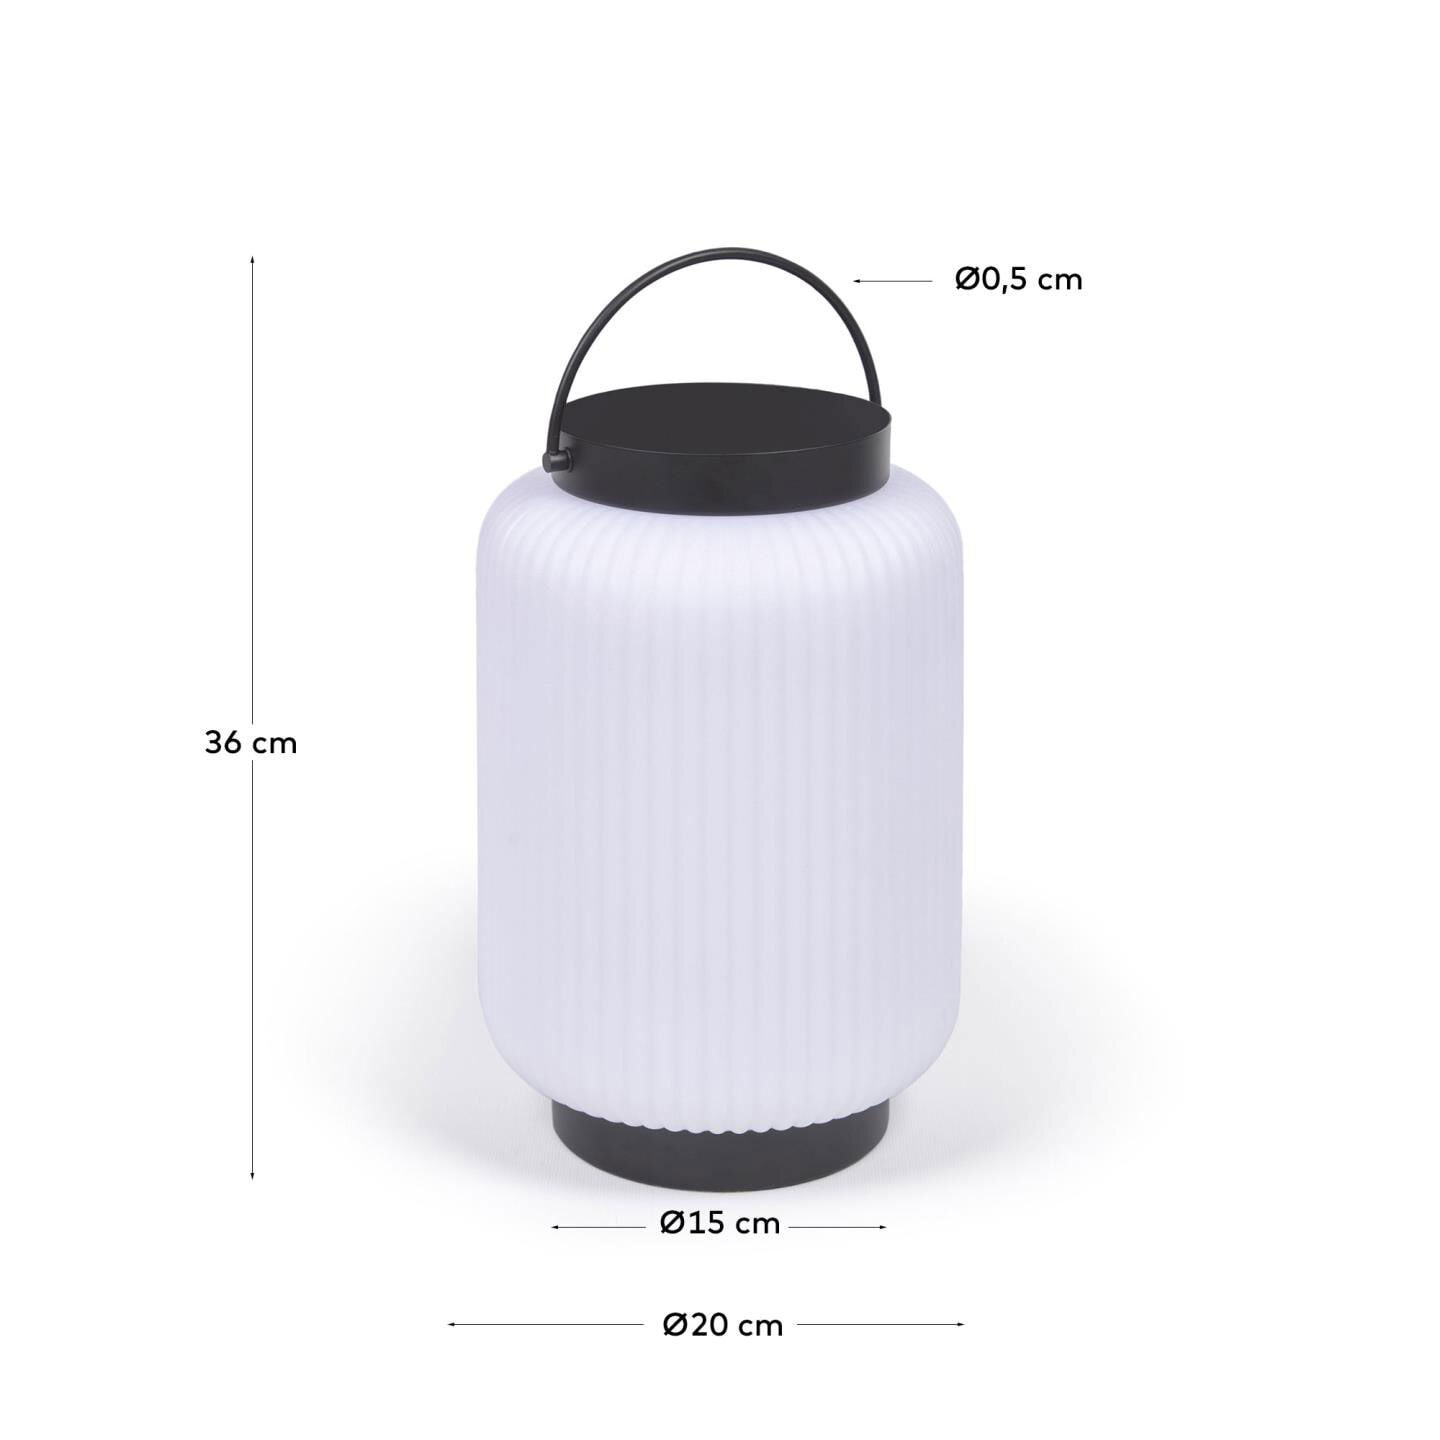 Kave Home Akku LED Tischlampe VERONA 36 cm black